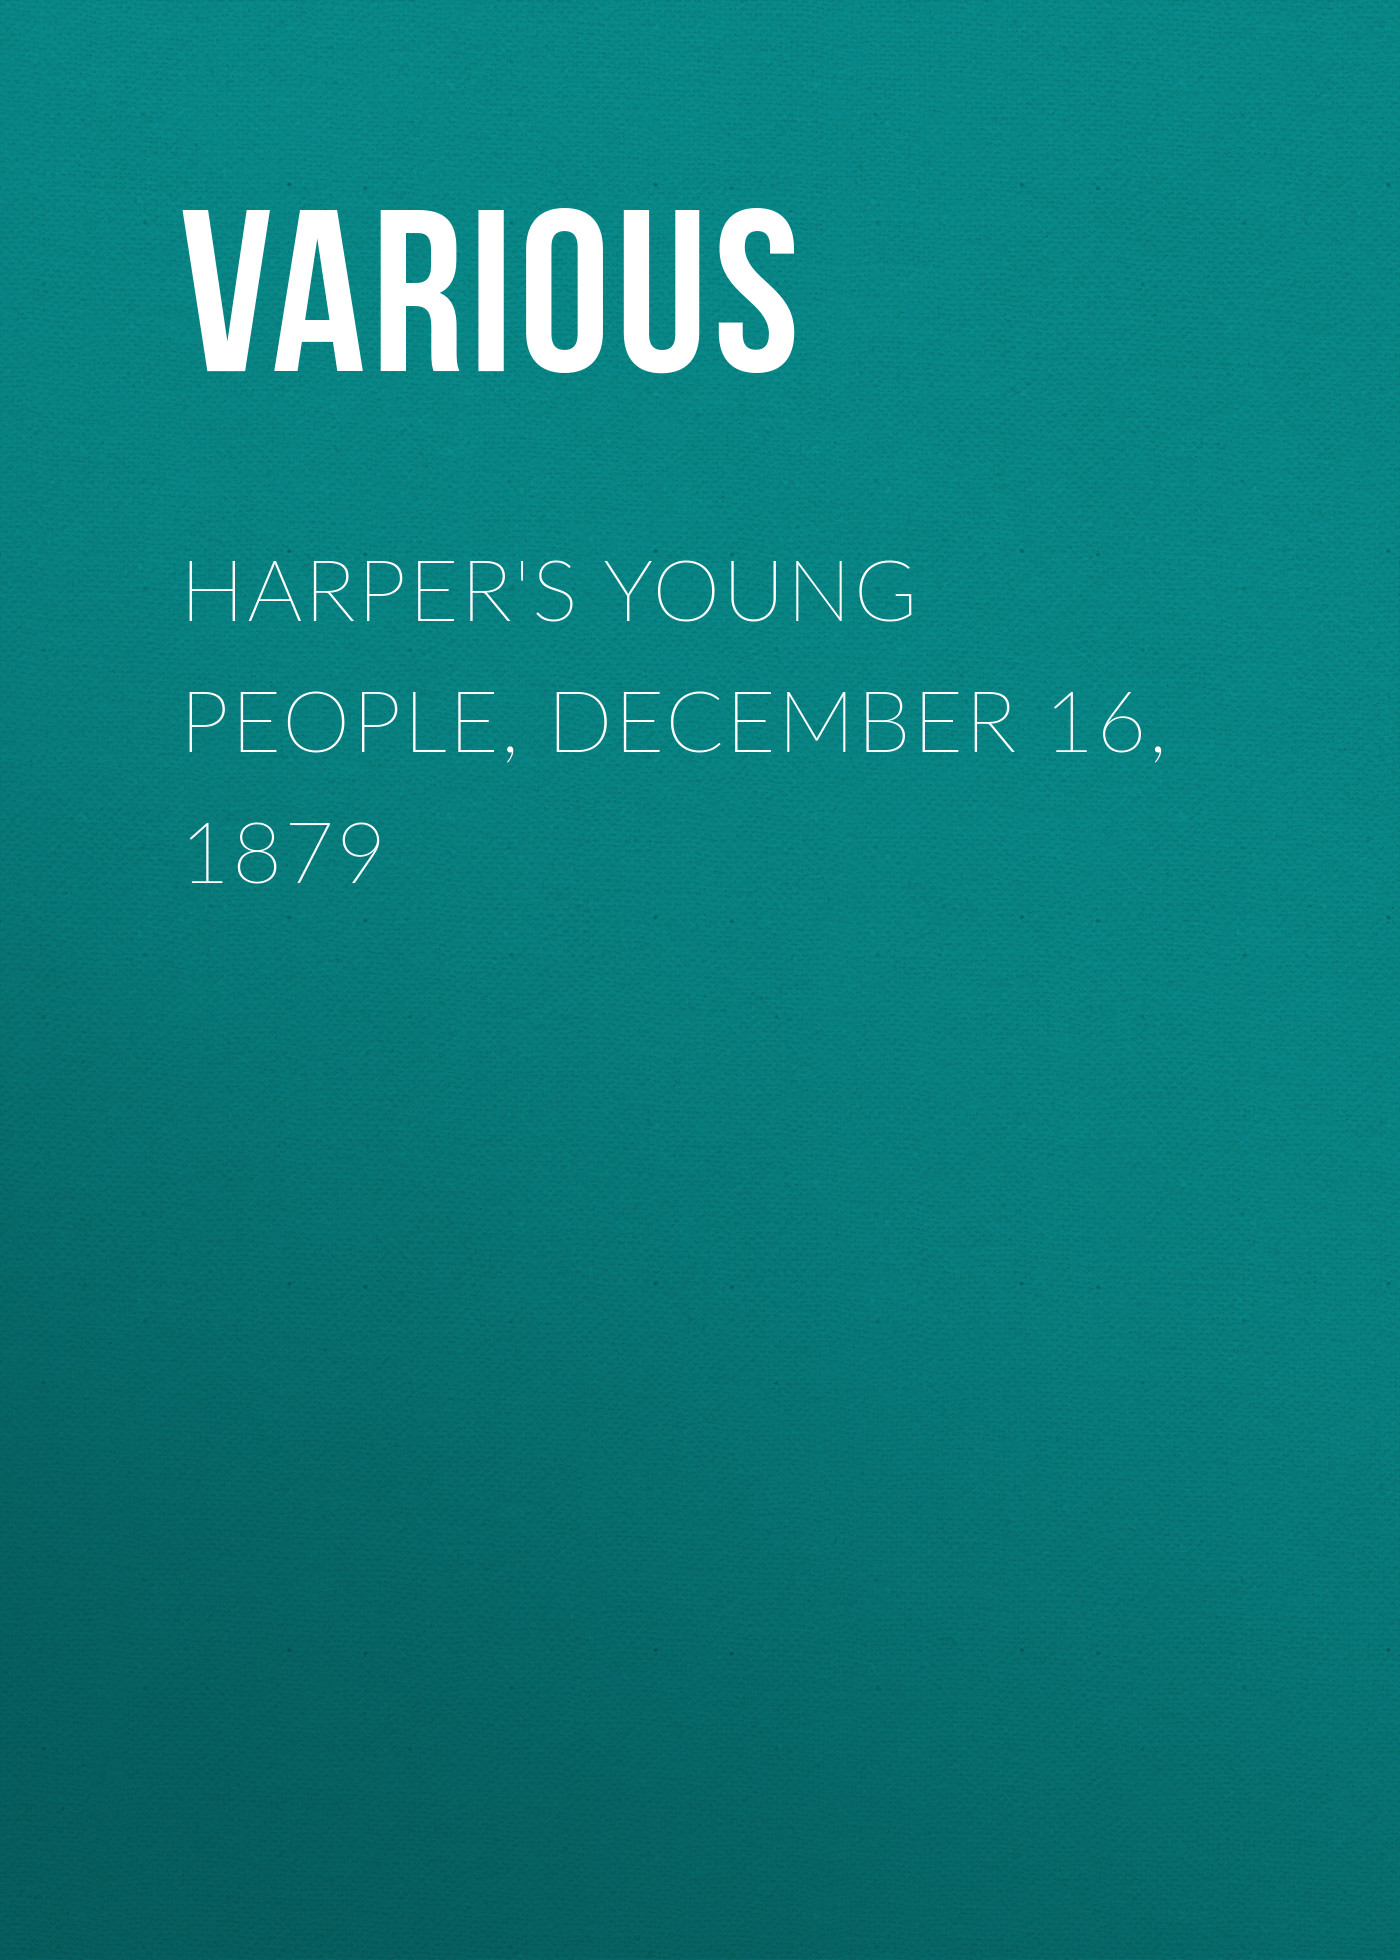 Книга Harper's Young People, December 16, 1879 из серии , созданная  Various, может относится к жанру Журналы, Зарубежная образовательная литература. Стоимость электронной книги Harper's Young People, December 16, 1879 с идентификатором 25716181 составляет 0 руб.